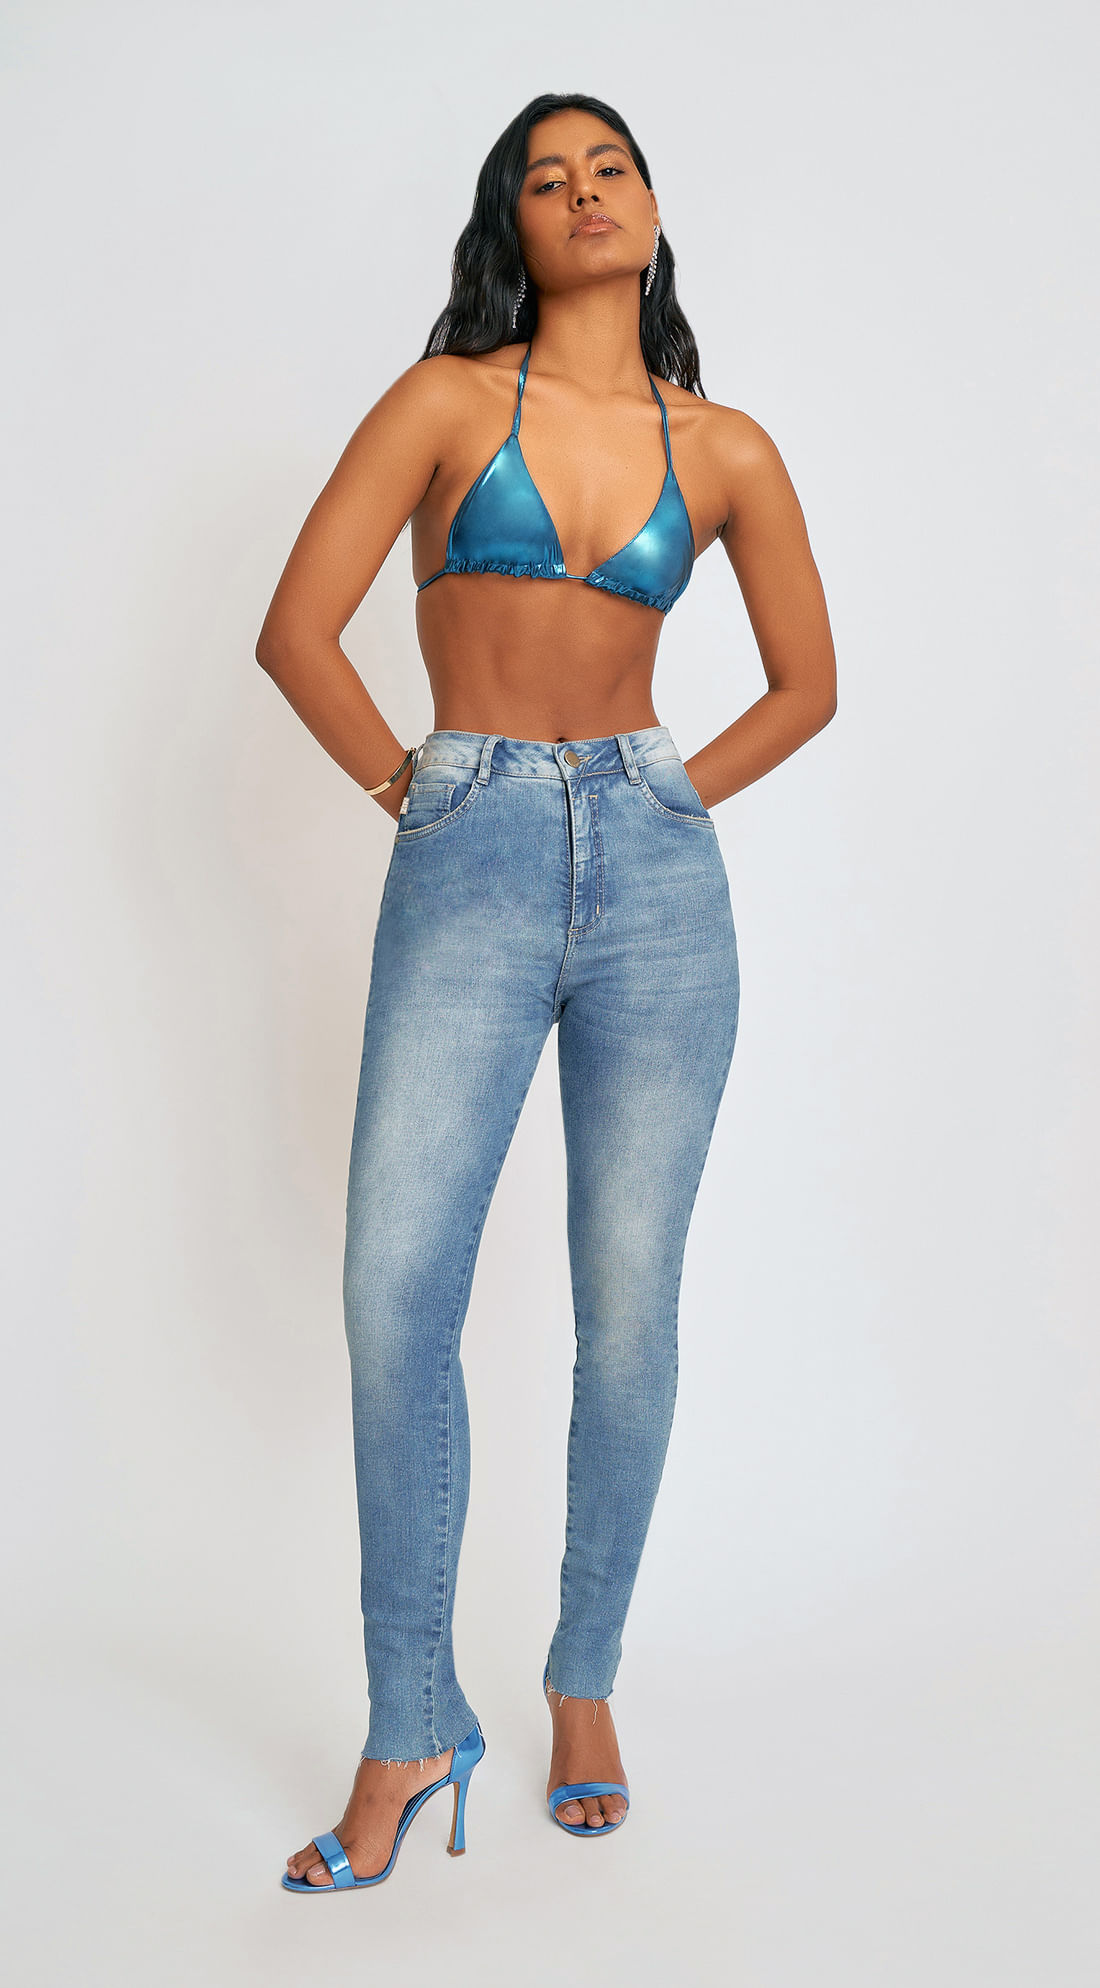 Zinco Calça Jeans Mom Cós Alto com Botão 204111 - Transwear